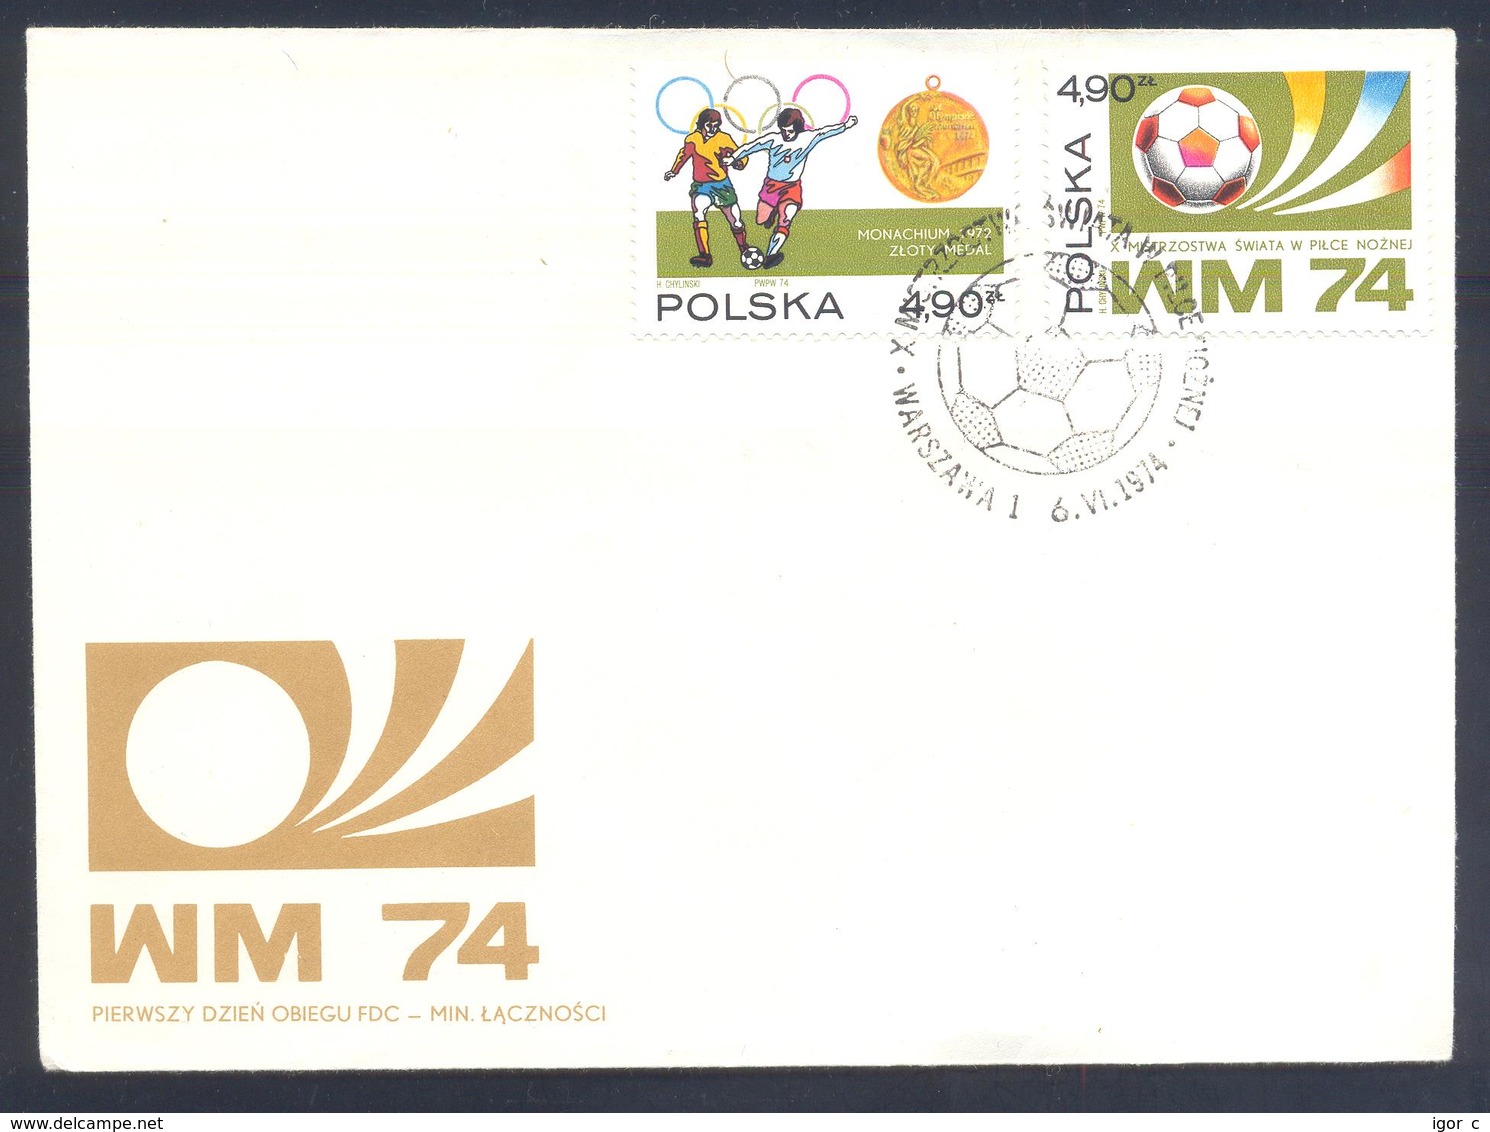 Poland 1974 Cover: Football Fussball Soccer Calcio Futbol: FIFA World Cup; - 1974 – Westdeutschland